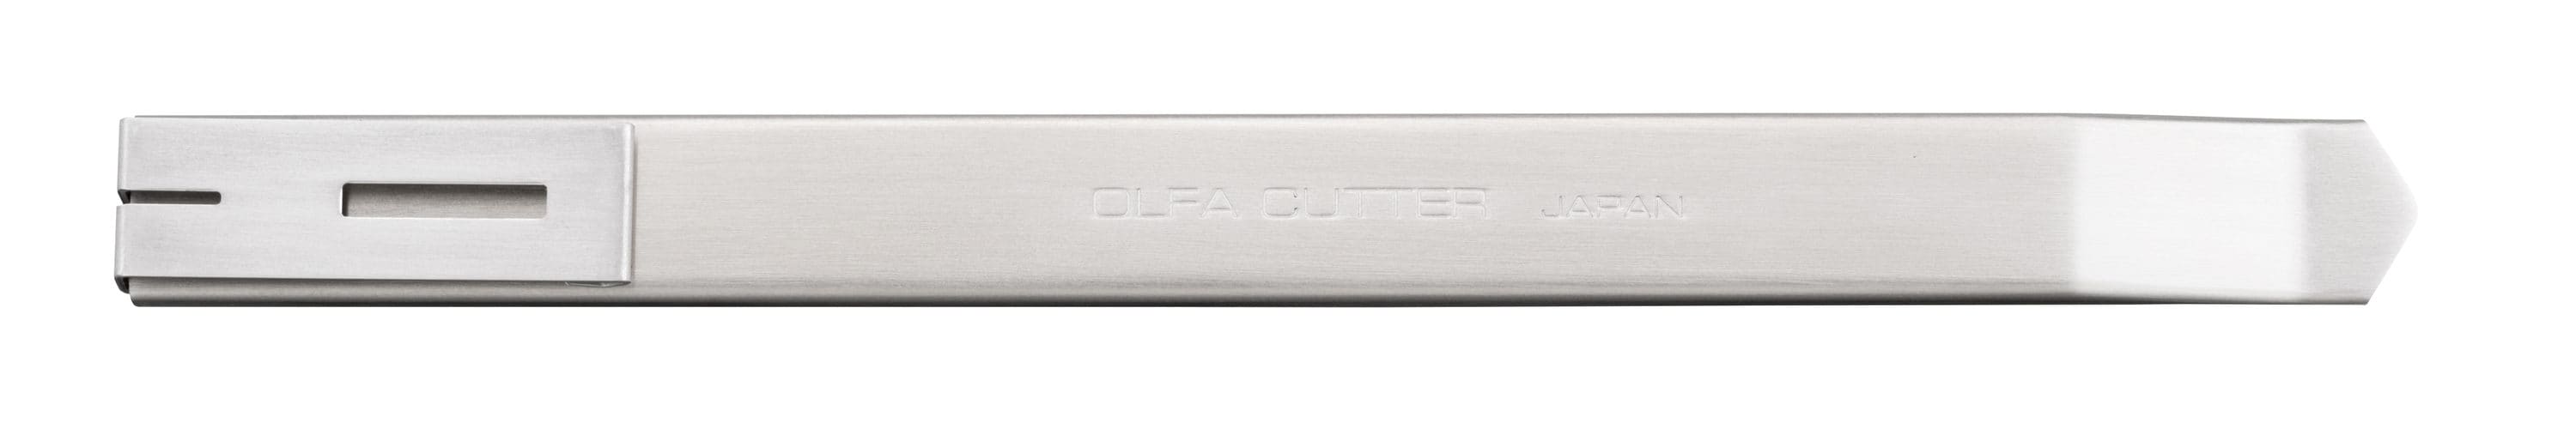 Olfa ES-1 Multi-Purpose Plastic Utility Knife 9mm, Model 1105997